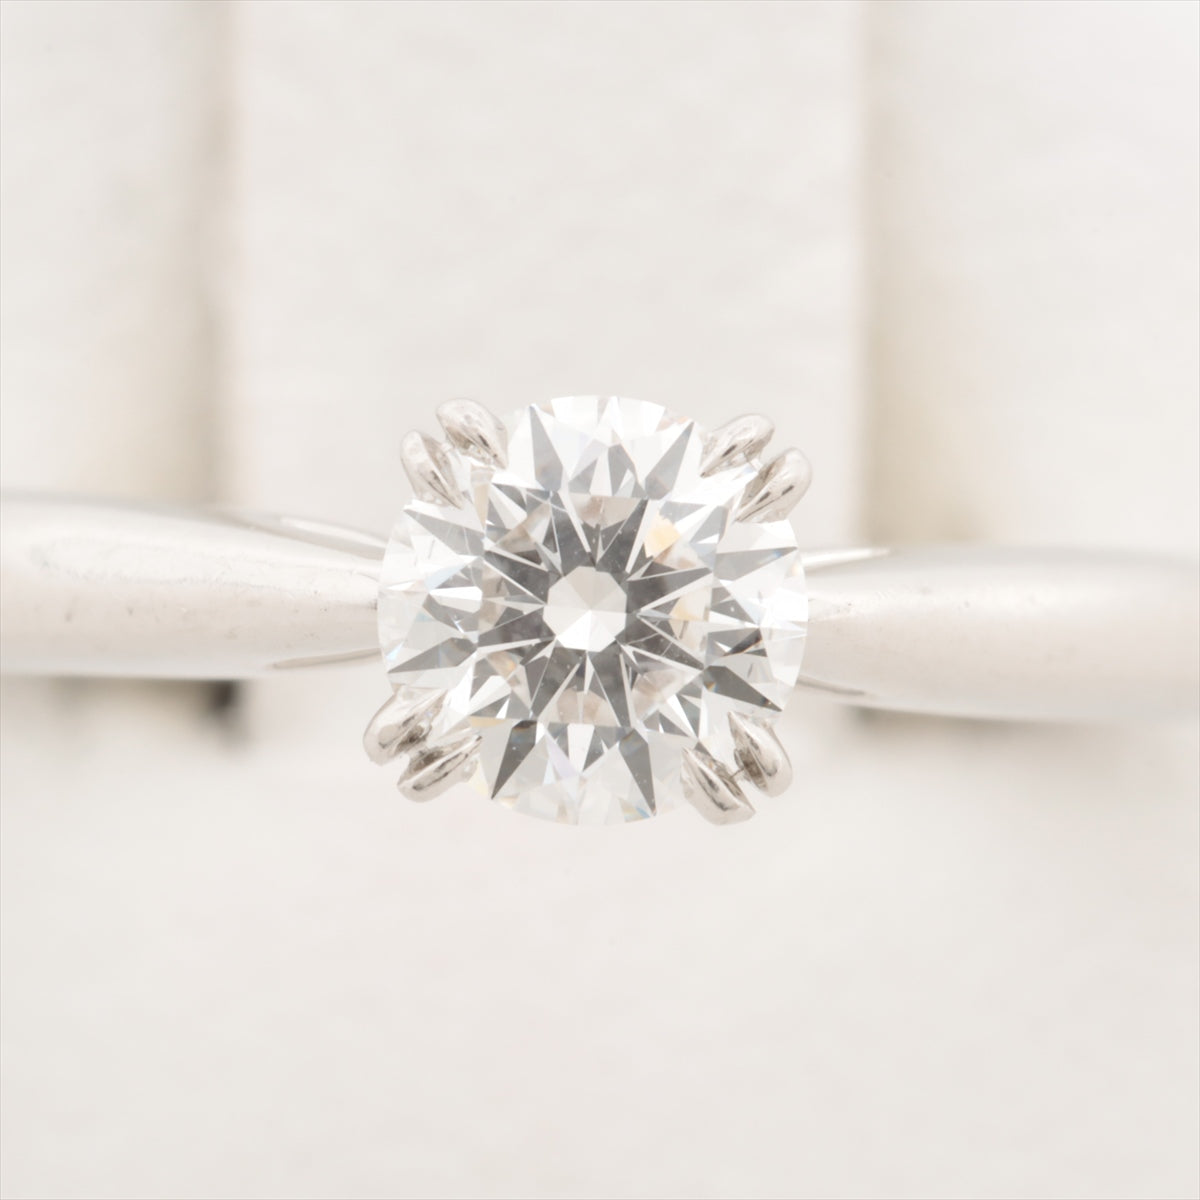 Harry Winston Solitaire Diamond Ring Pt950 4.2g 0.55 D VS1 3EX NONE RGDPRD005NSS-045oladh